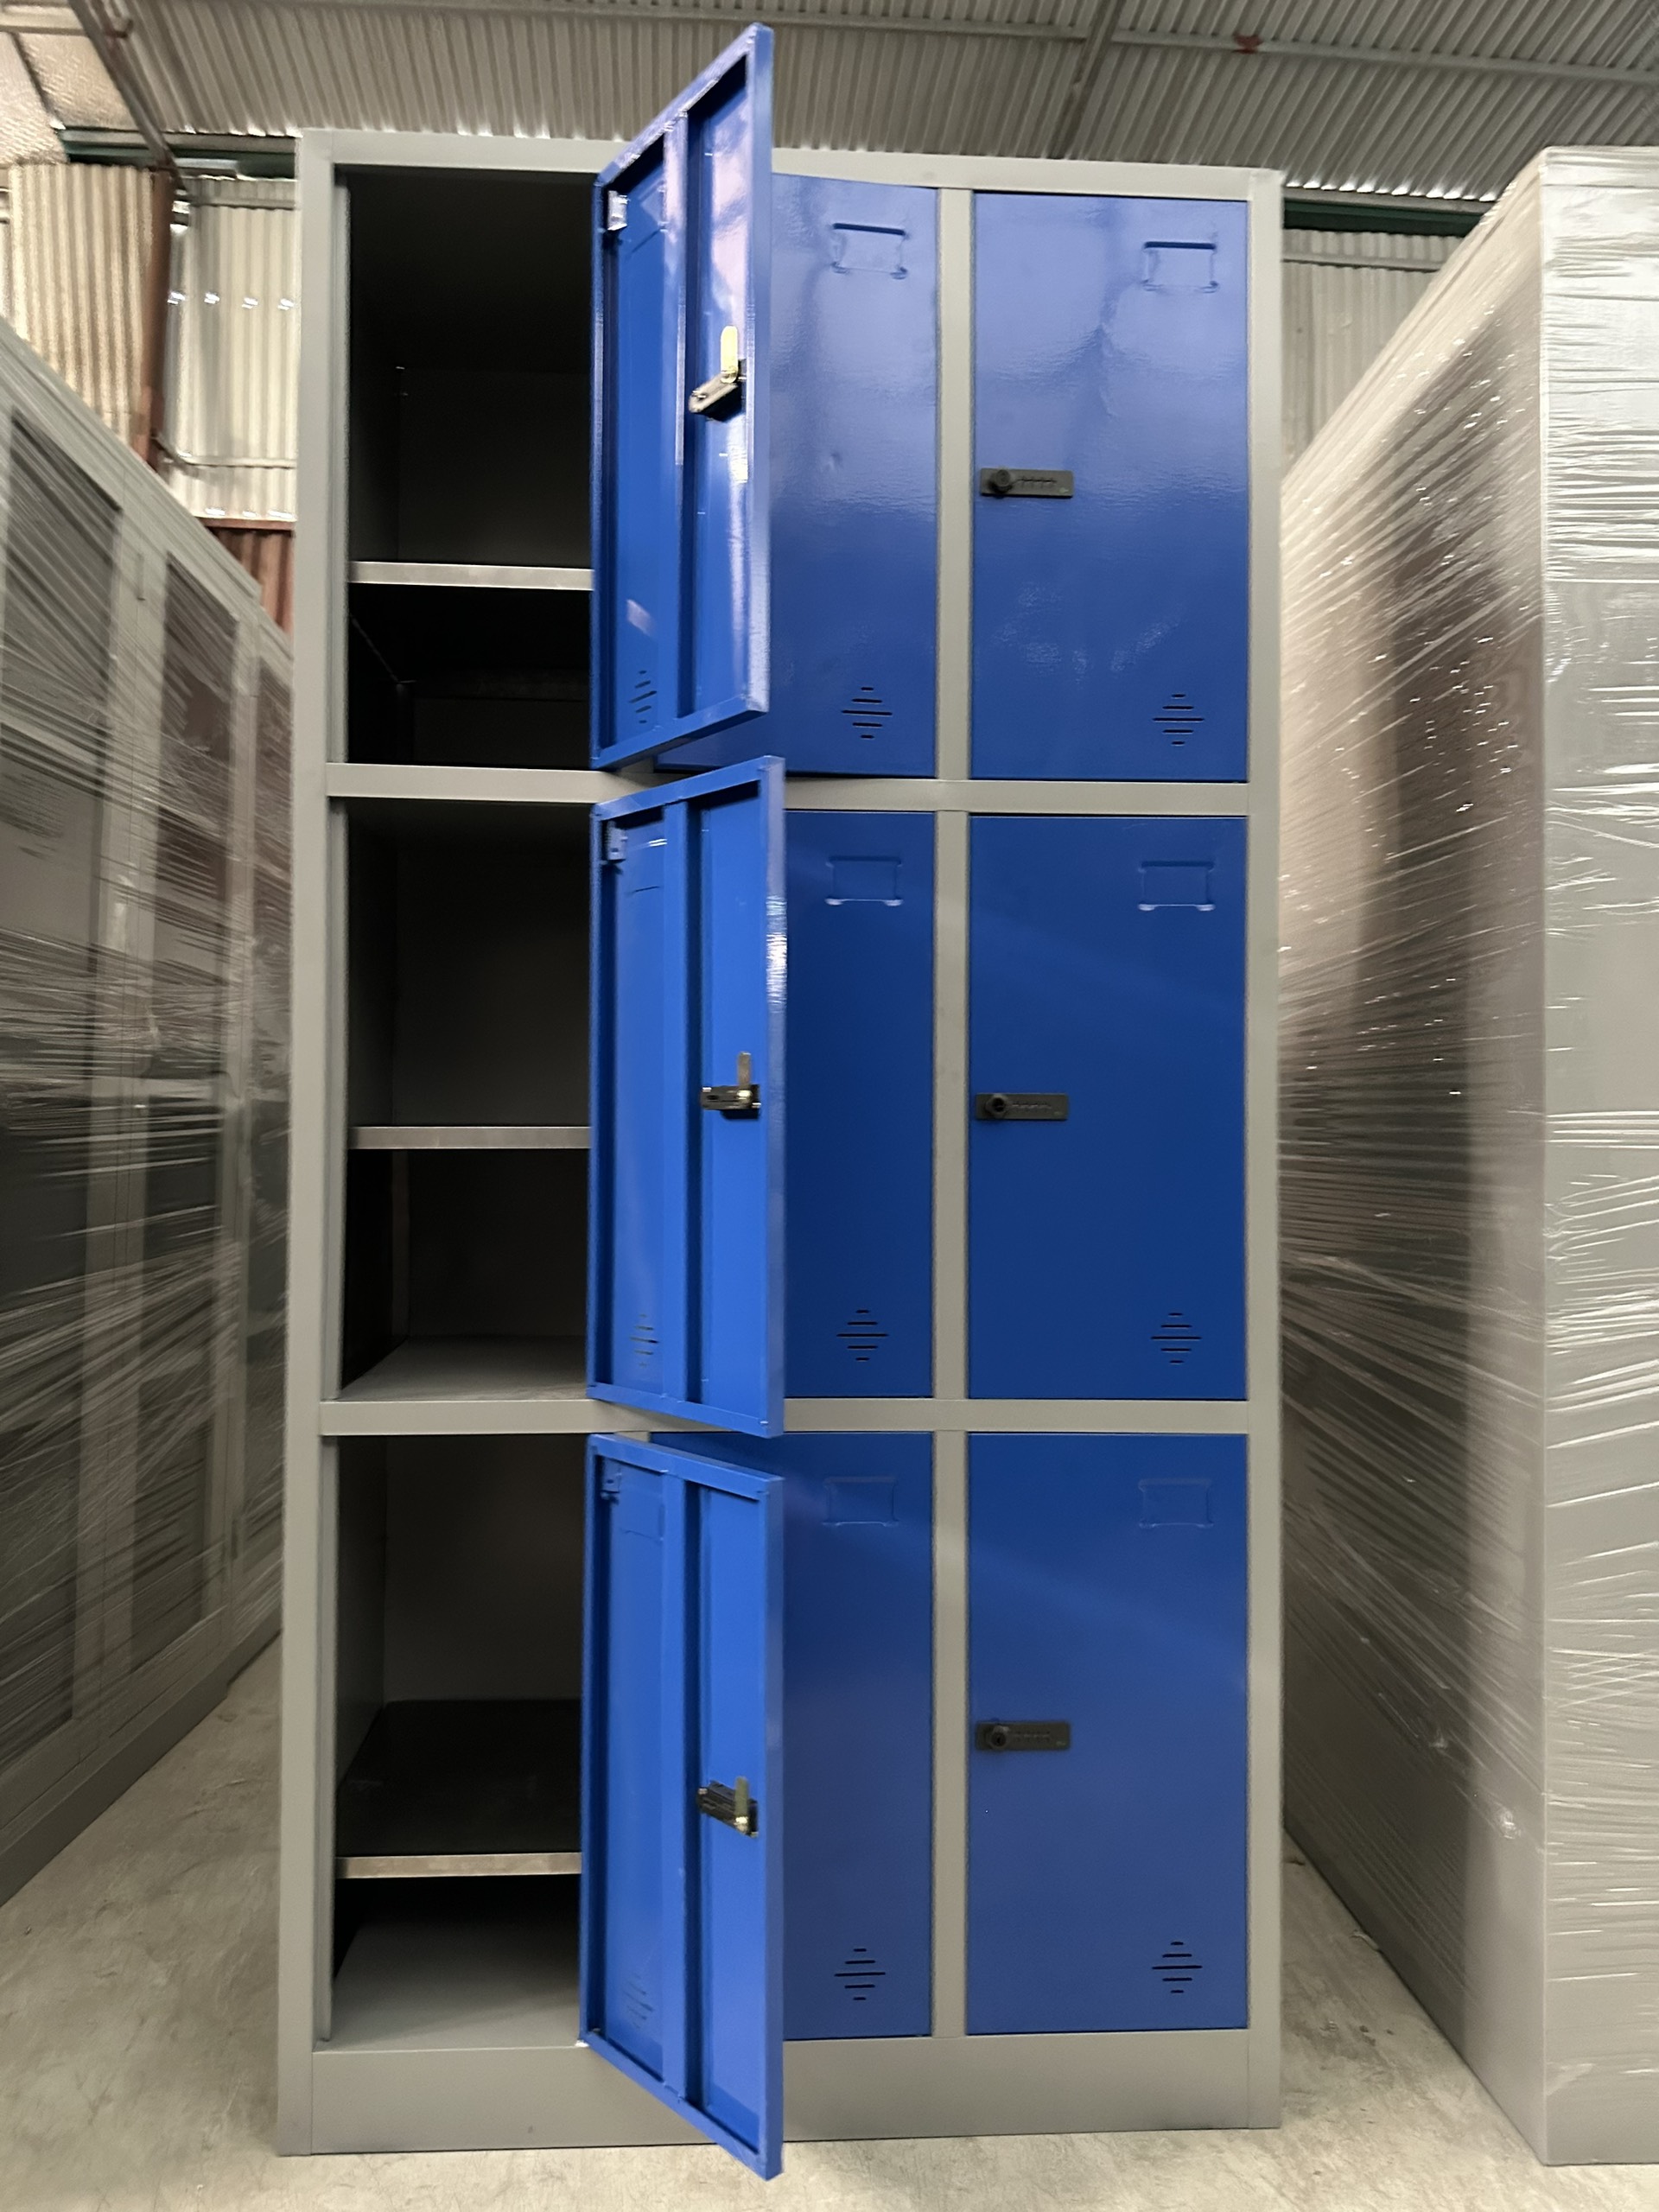 Cung ứng tủ locker 9 ngăn màu xanh cho khách hàng